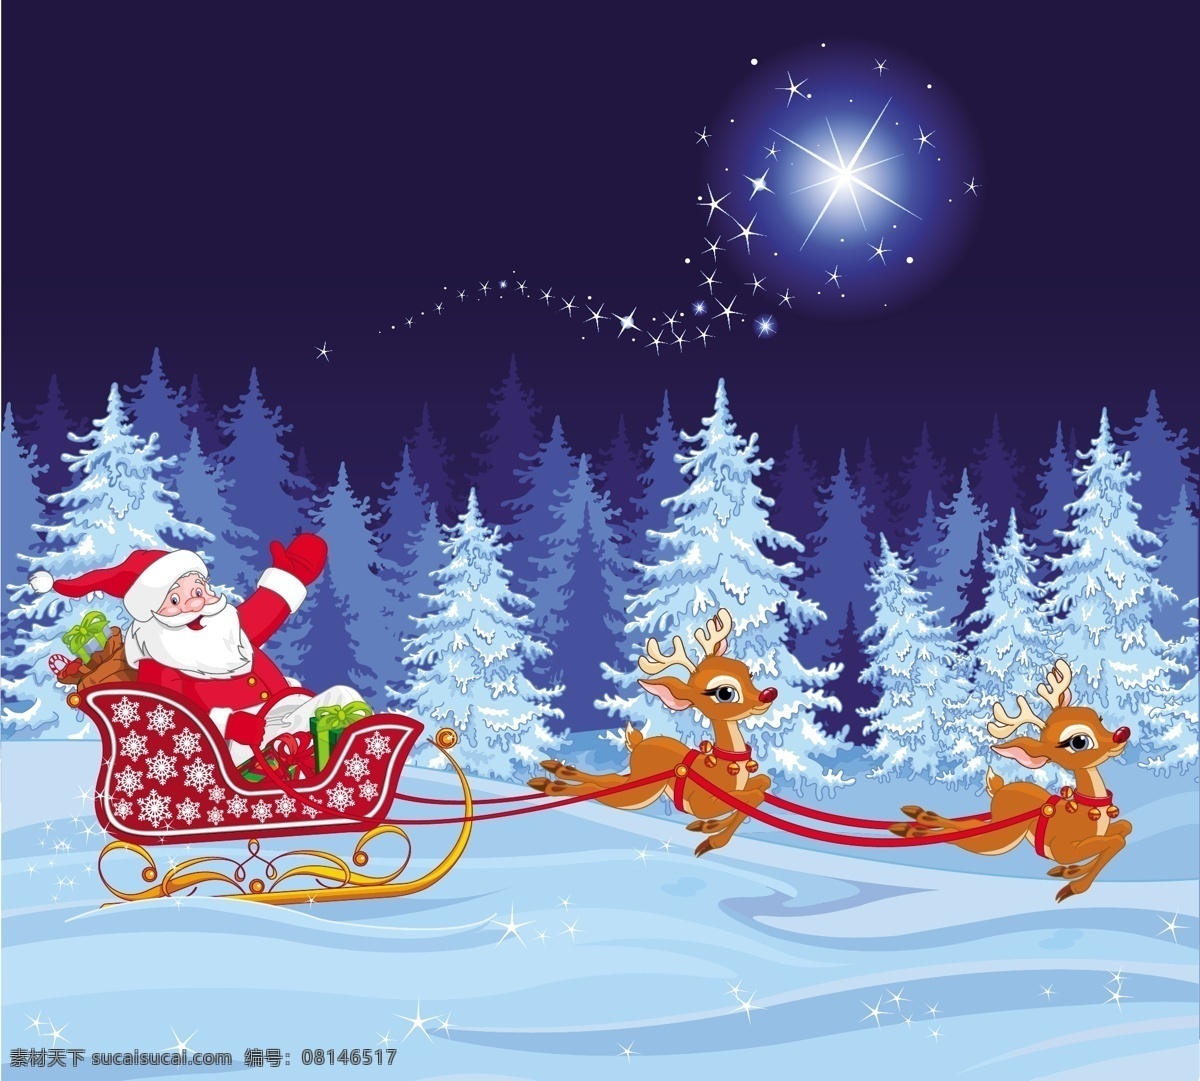 拉 圣诞老人 雪地 上 奔跑 圣诞 圣诞鹿 白雪 圣诞树 星光 光晕 闪亮 圣诞雪橇车 奔跑的圣诞鹿 圣诞节 节日素材 新年素材 卡通素材 文化艺术 节日庆祝